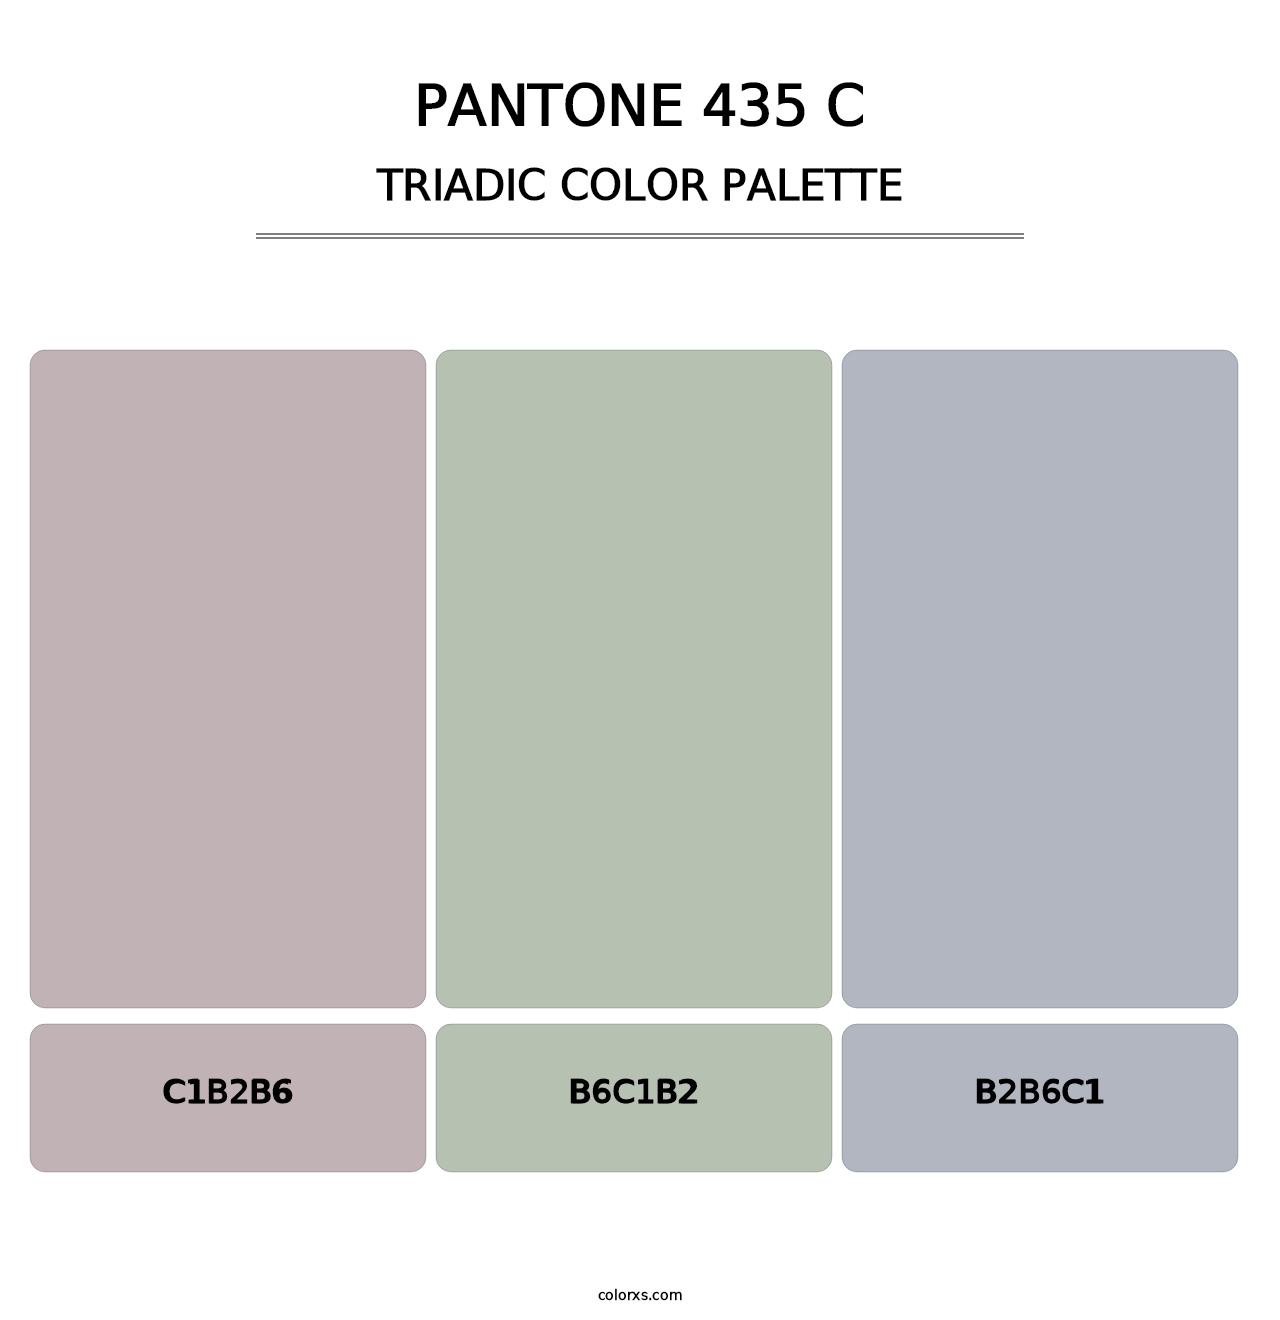 PANTONE 435 C - Triadic Color Palette